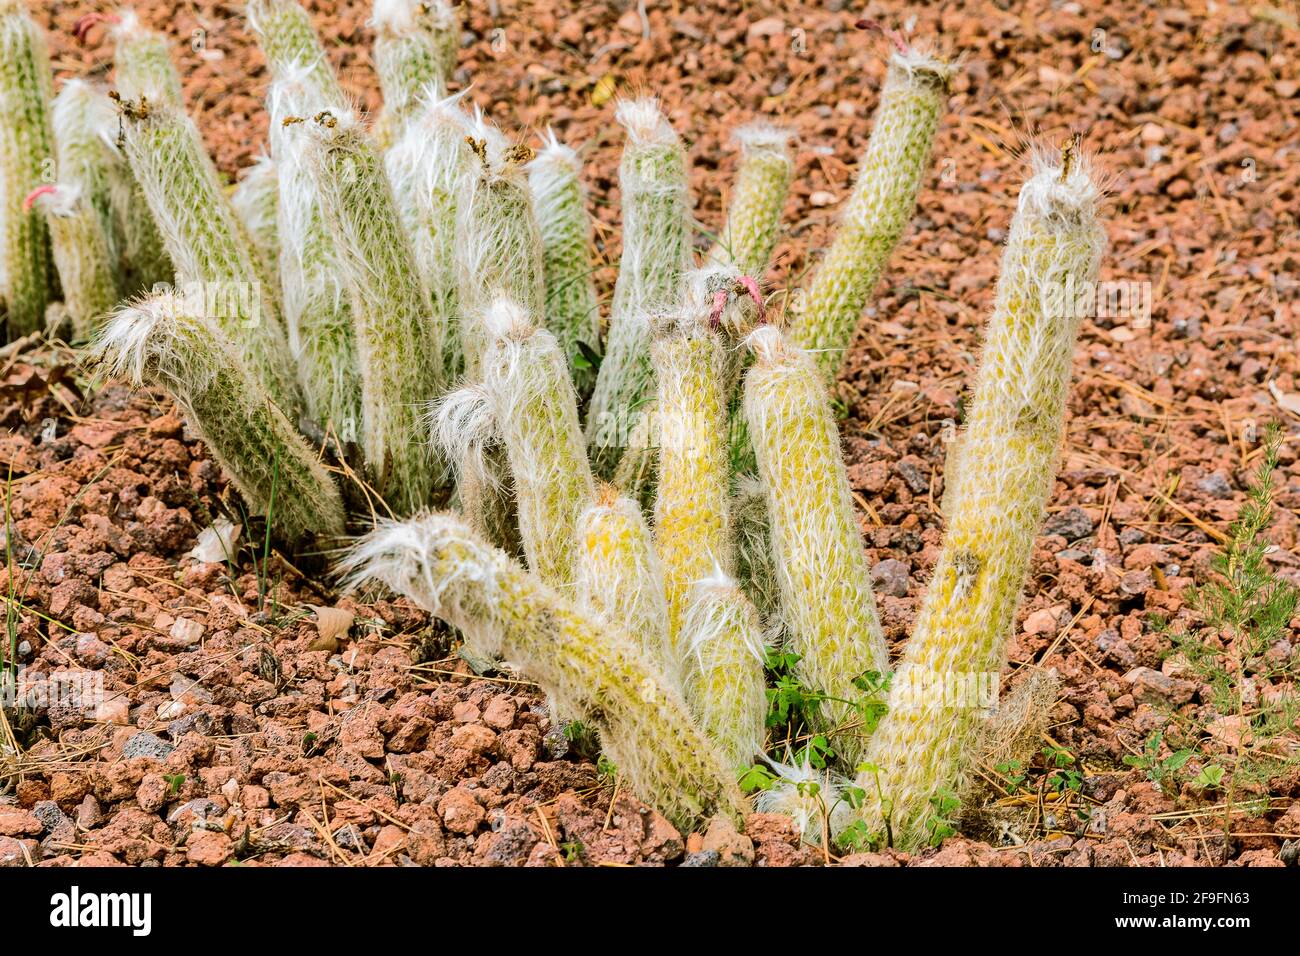 Mehrere Kakteen Pflanzen Oreocereus celsianus aus der Wüste von Bolivien, Chille und Peru ohne Blüten im Herbst. Gepflanzt im botanischen Garten auf s Stockfoto